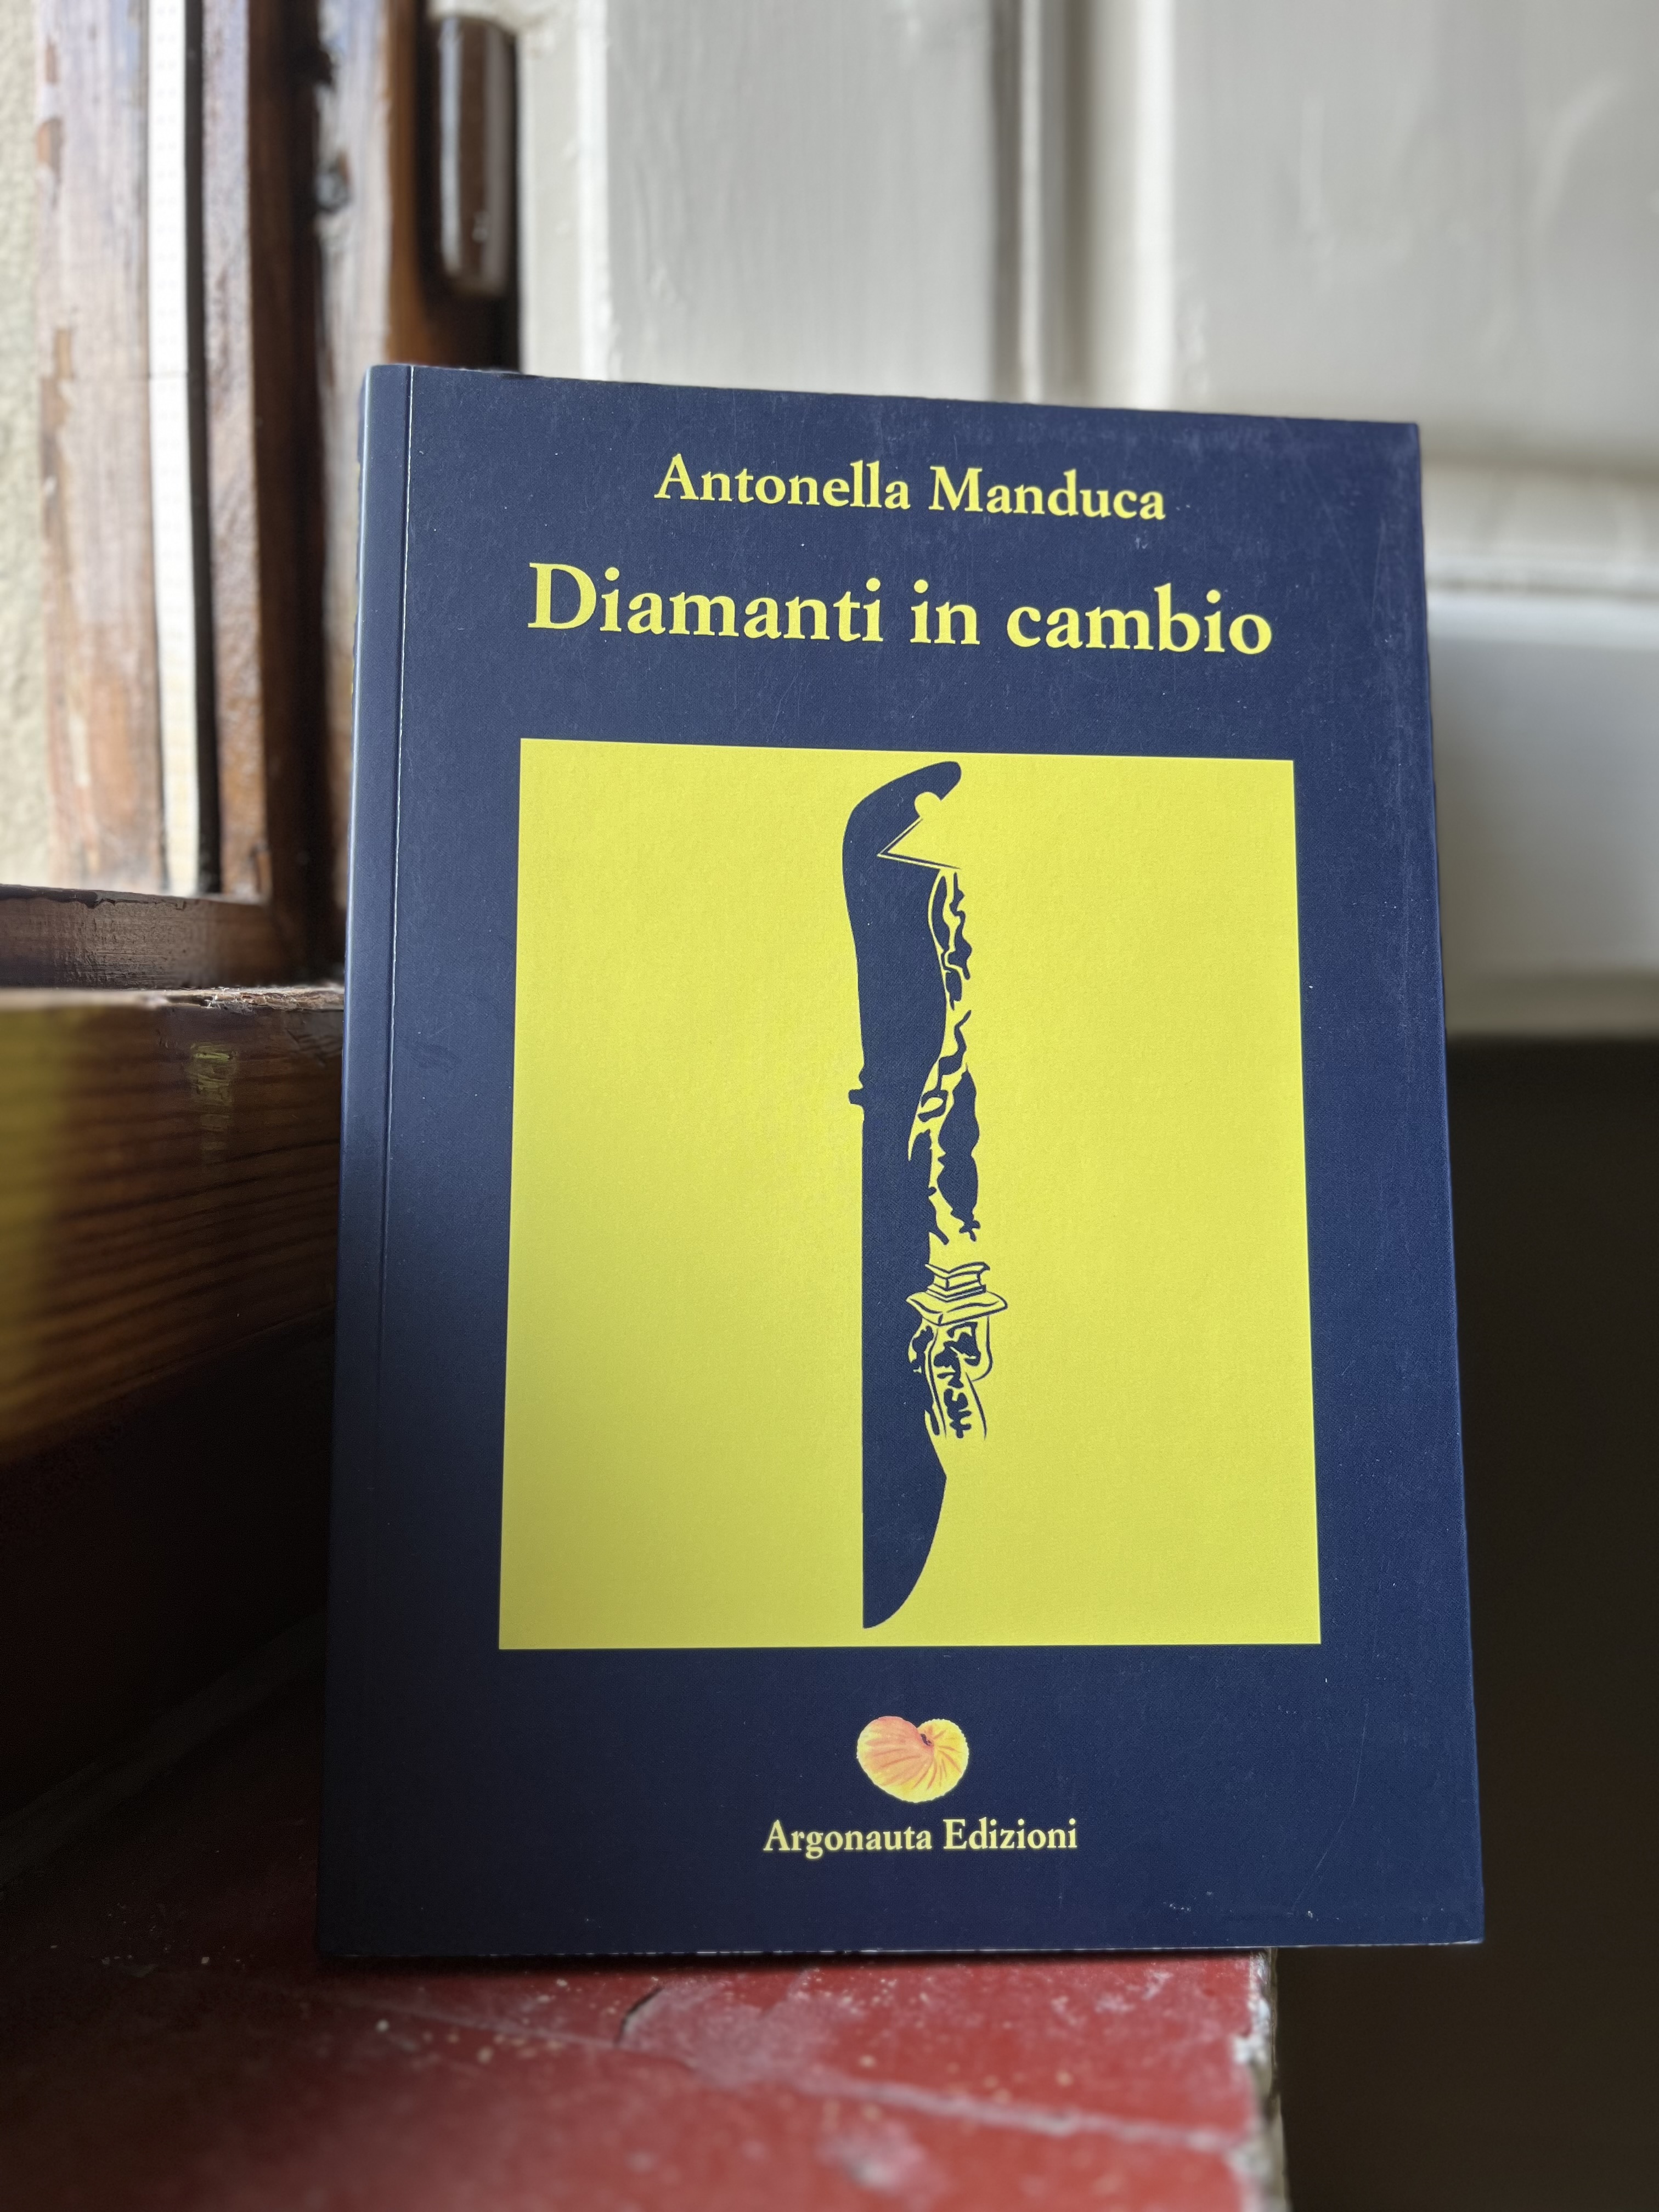 Noir e mondo dell’arte: il 7 marzo il romanzo di Antonella Manduca a palazzo Sacrati Strozzi